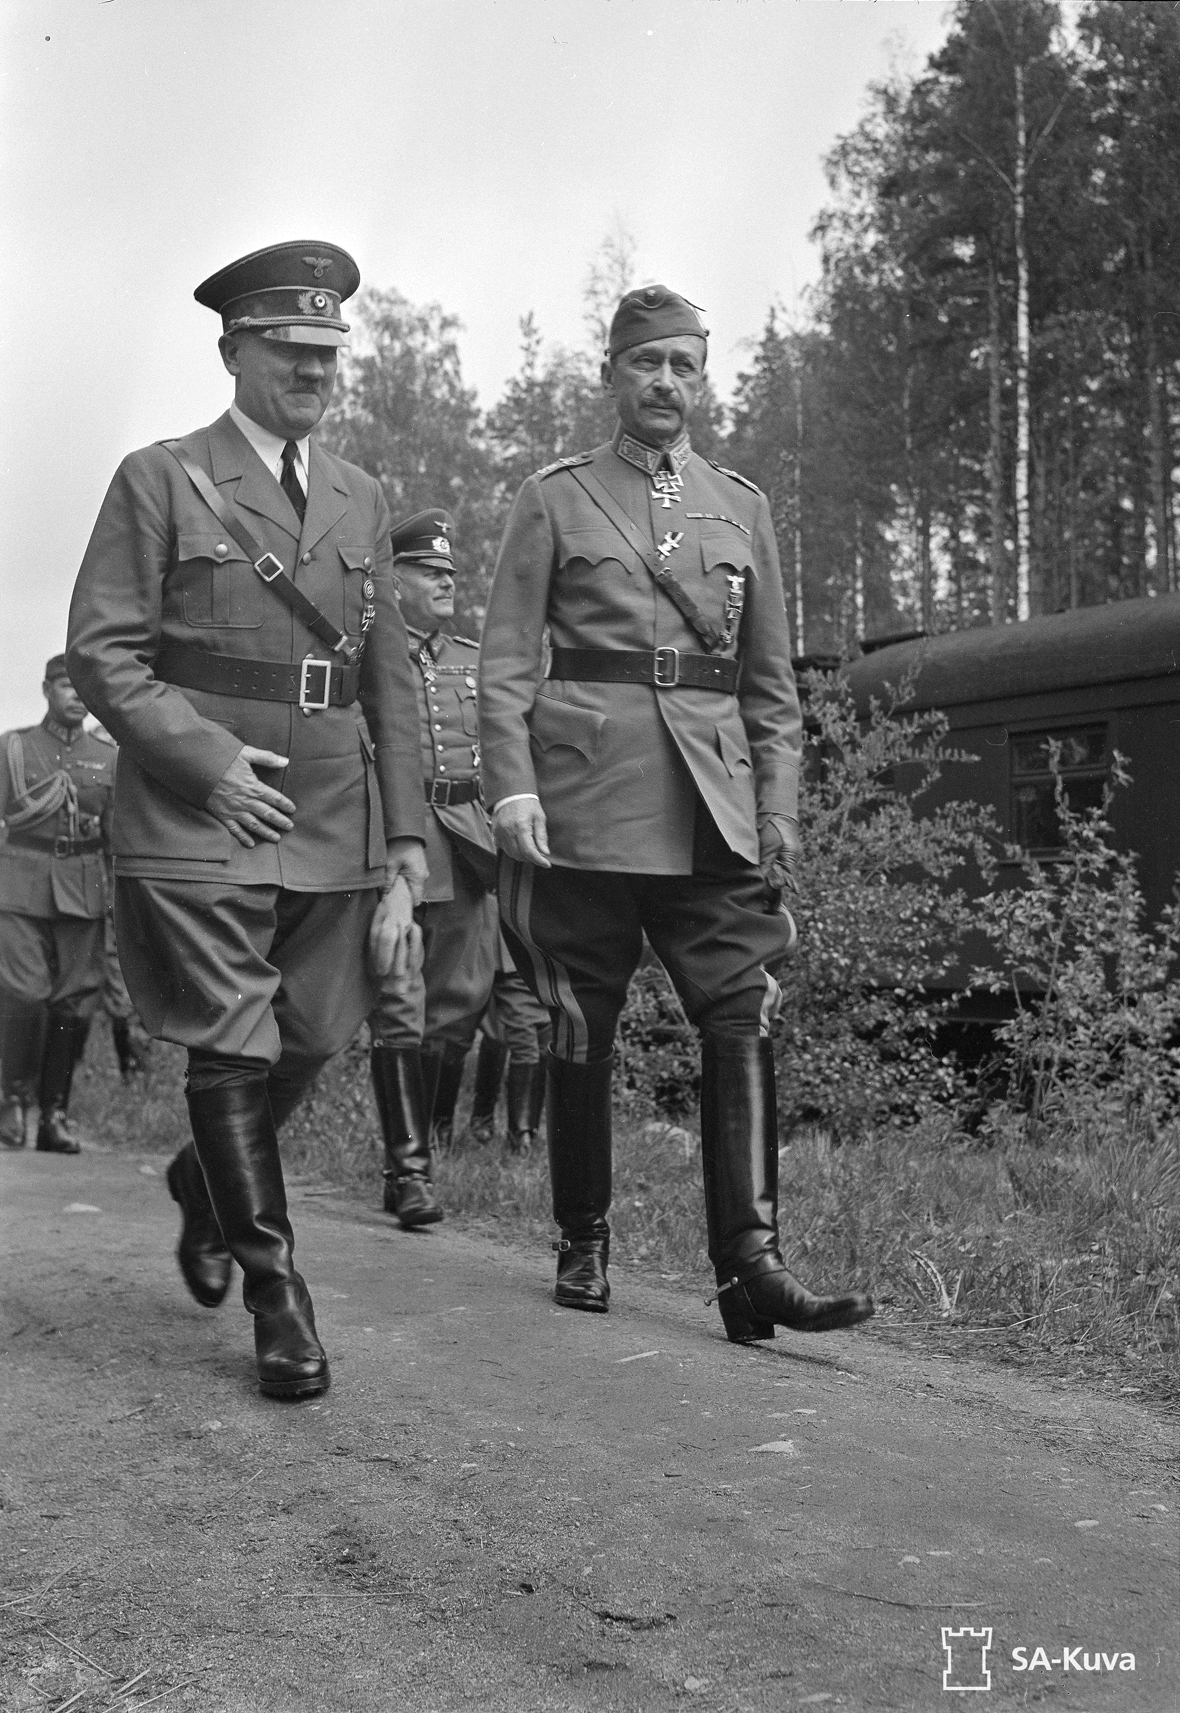 Adolf Hitler and Mannerheim in Finland